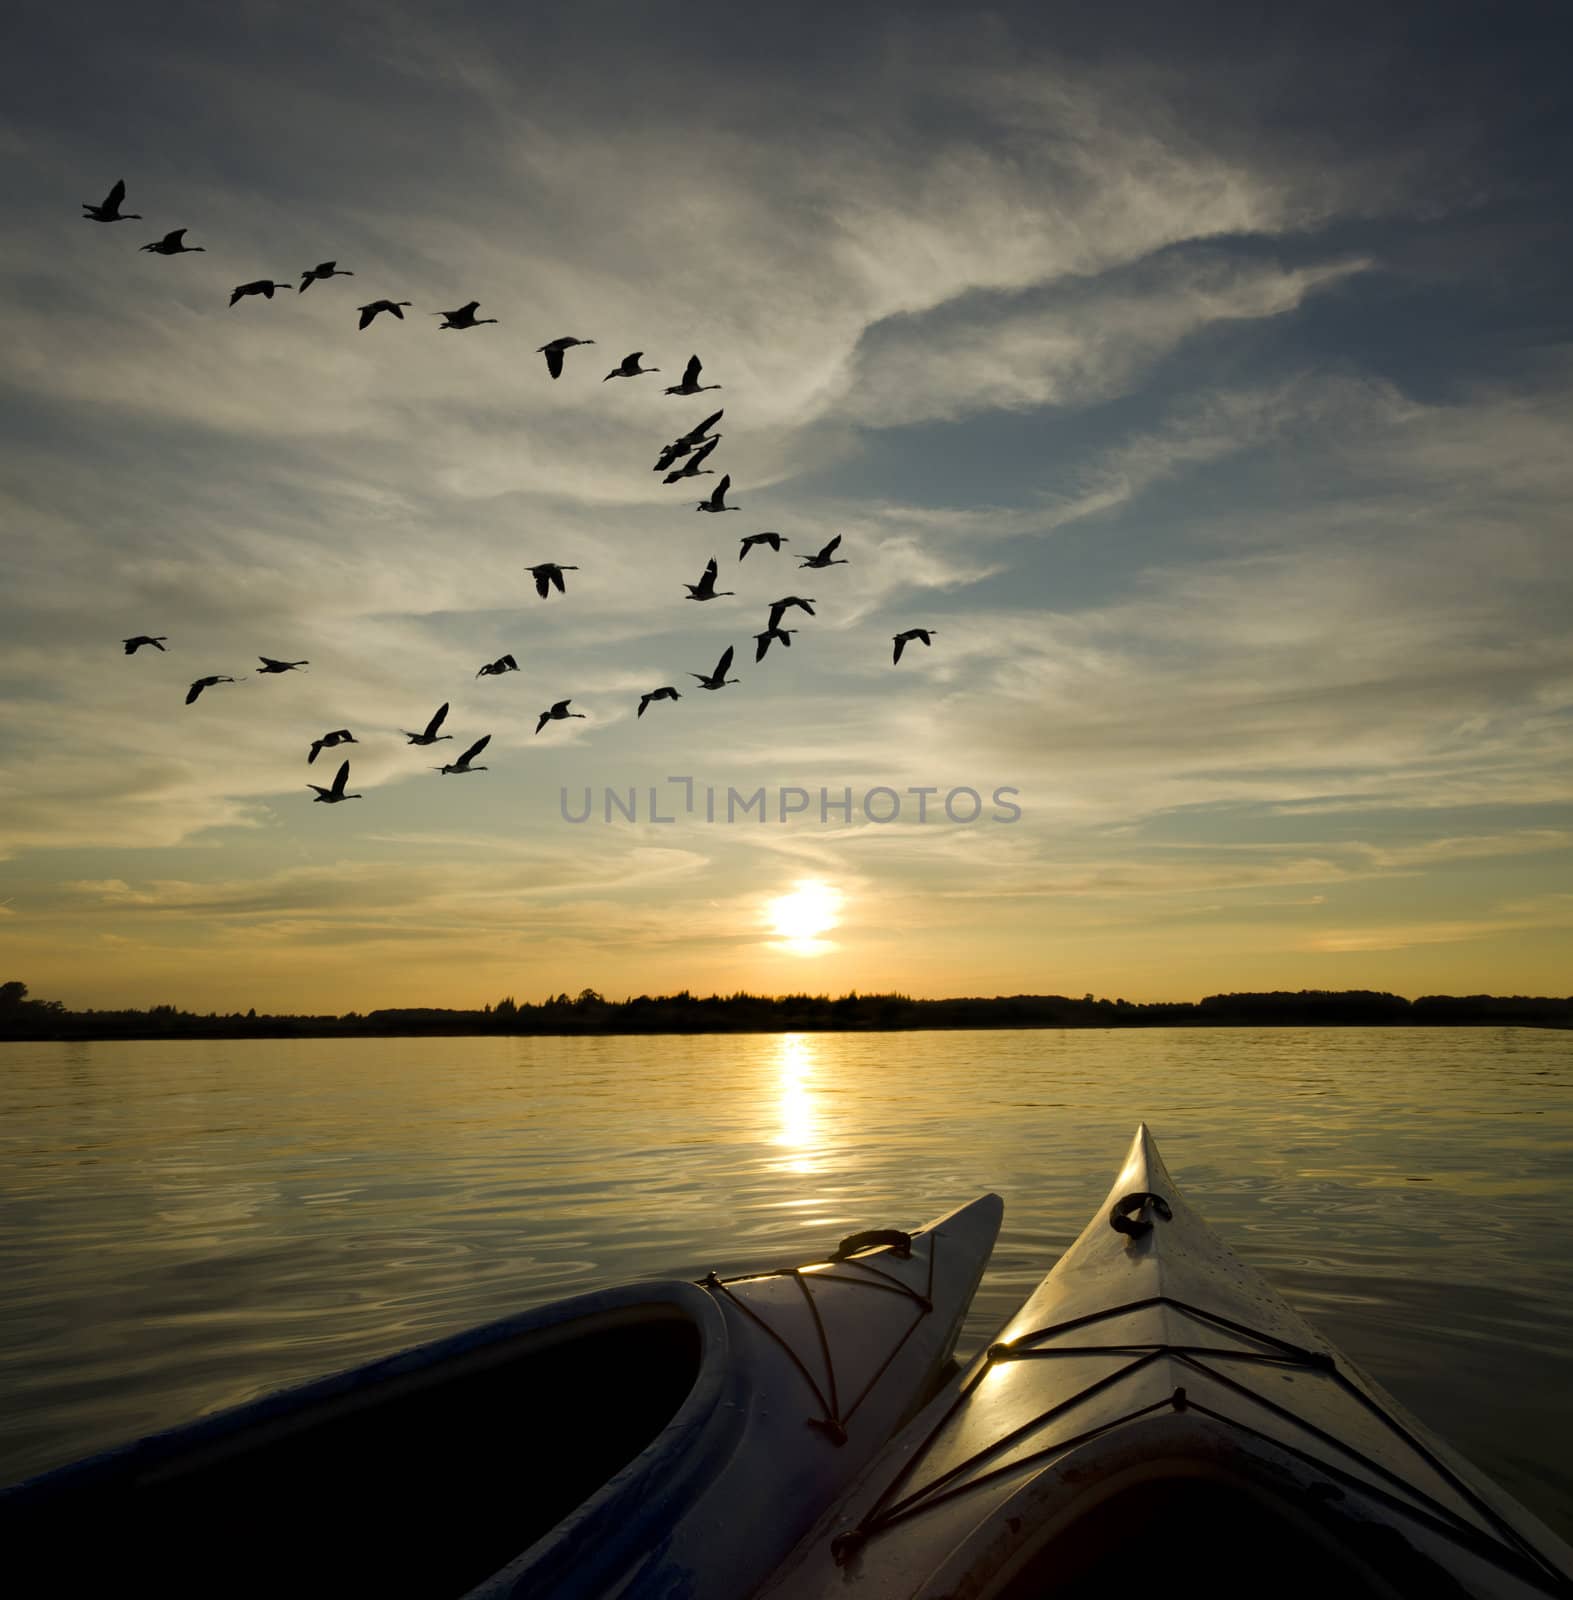 Kayaks on Lake Ontario Sunset by Gordo25